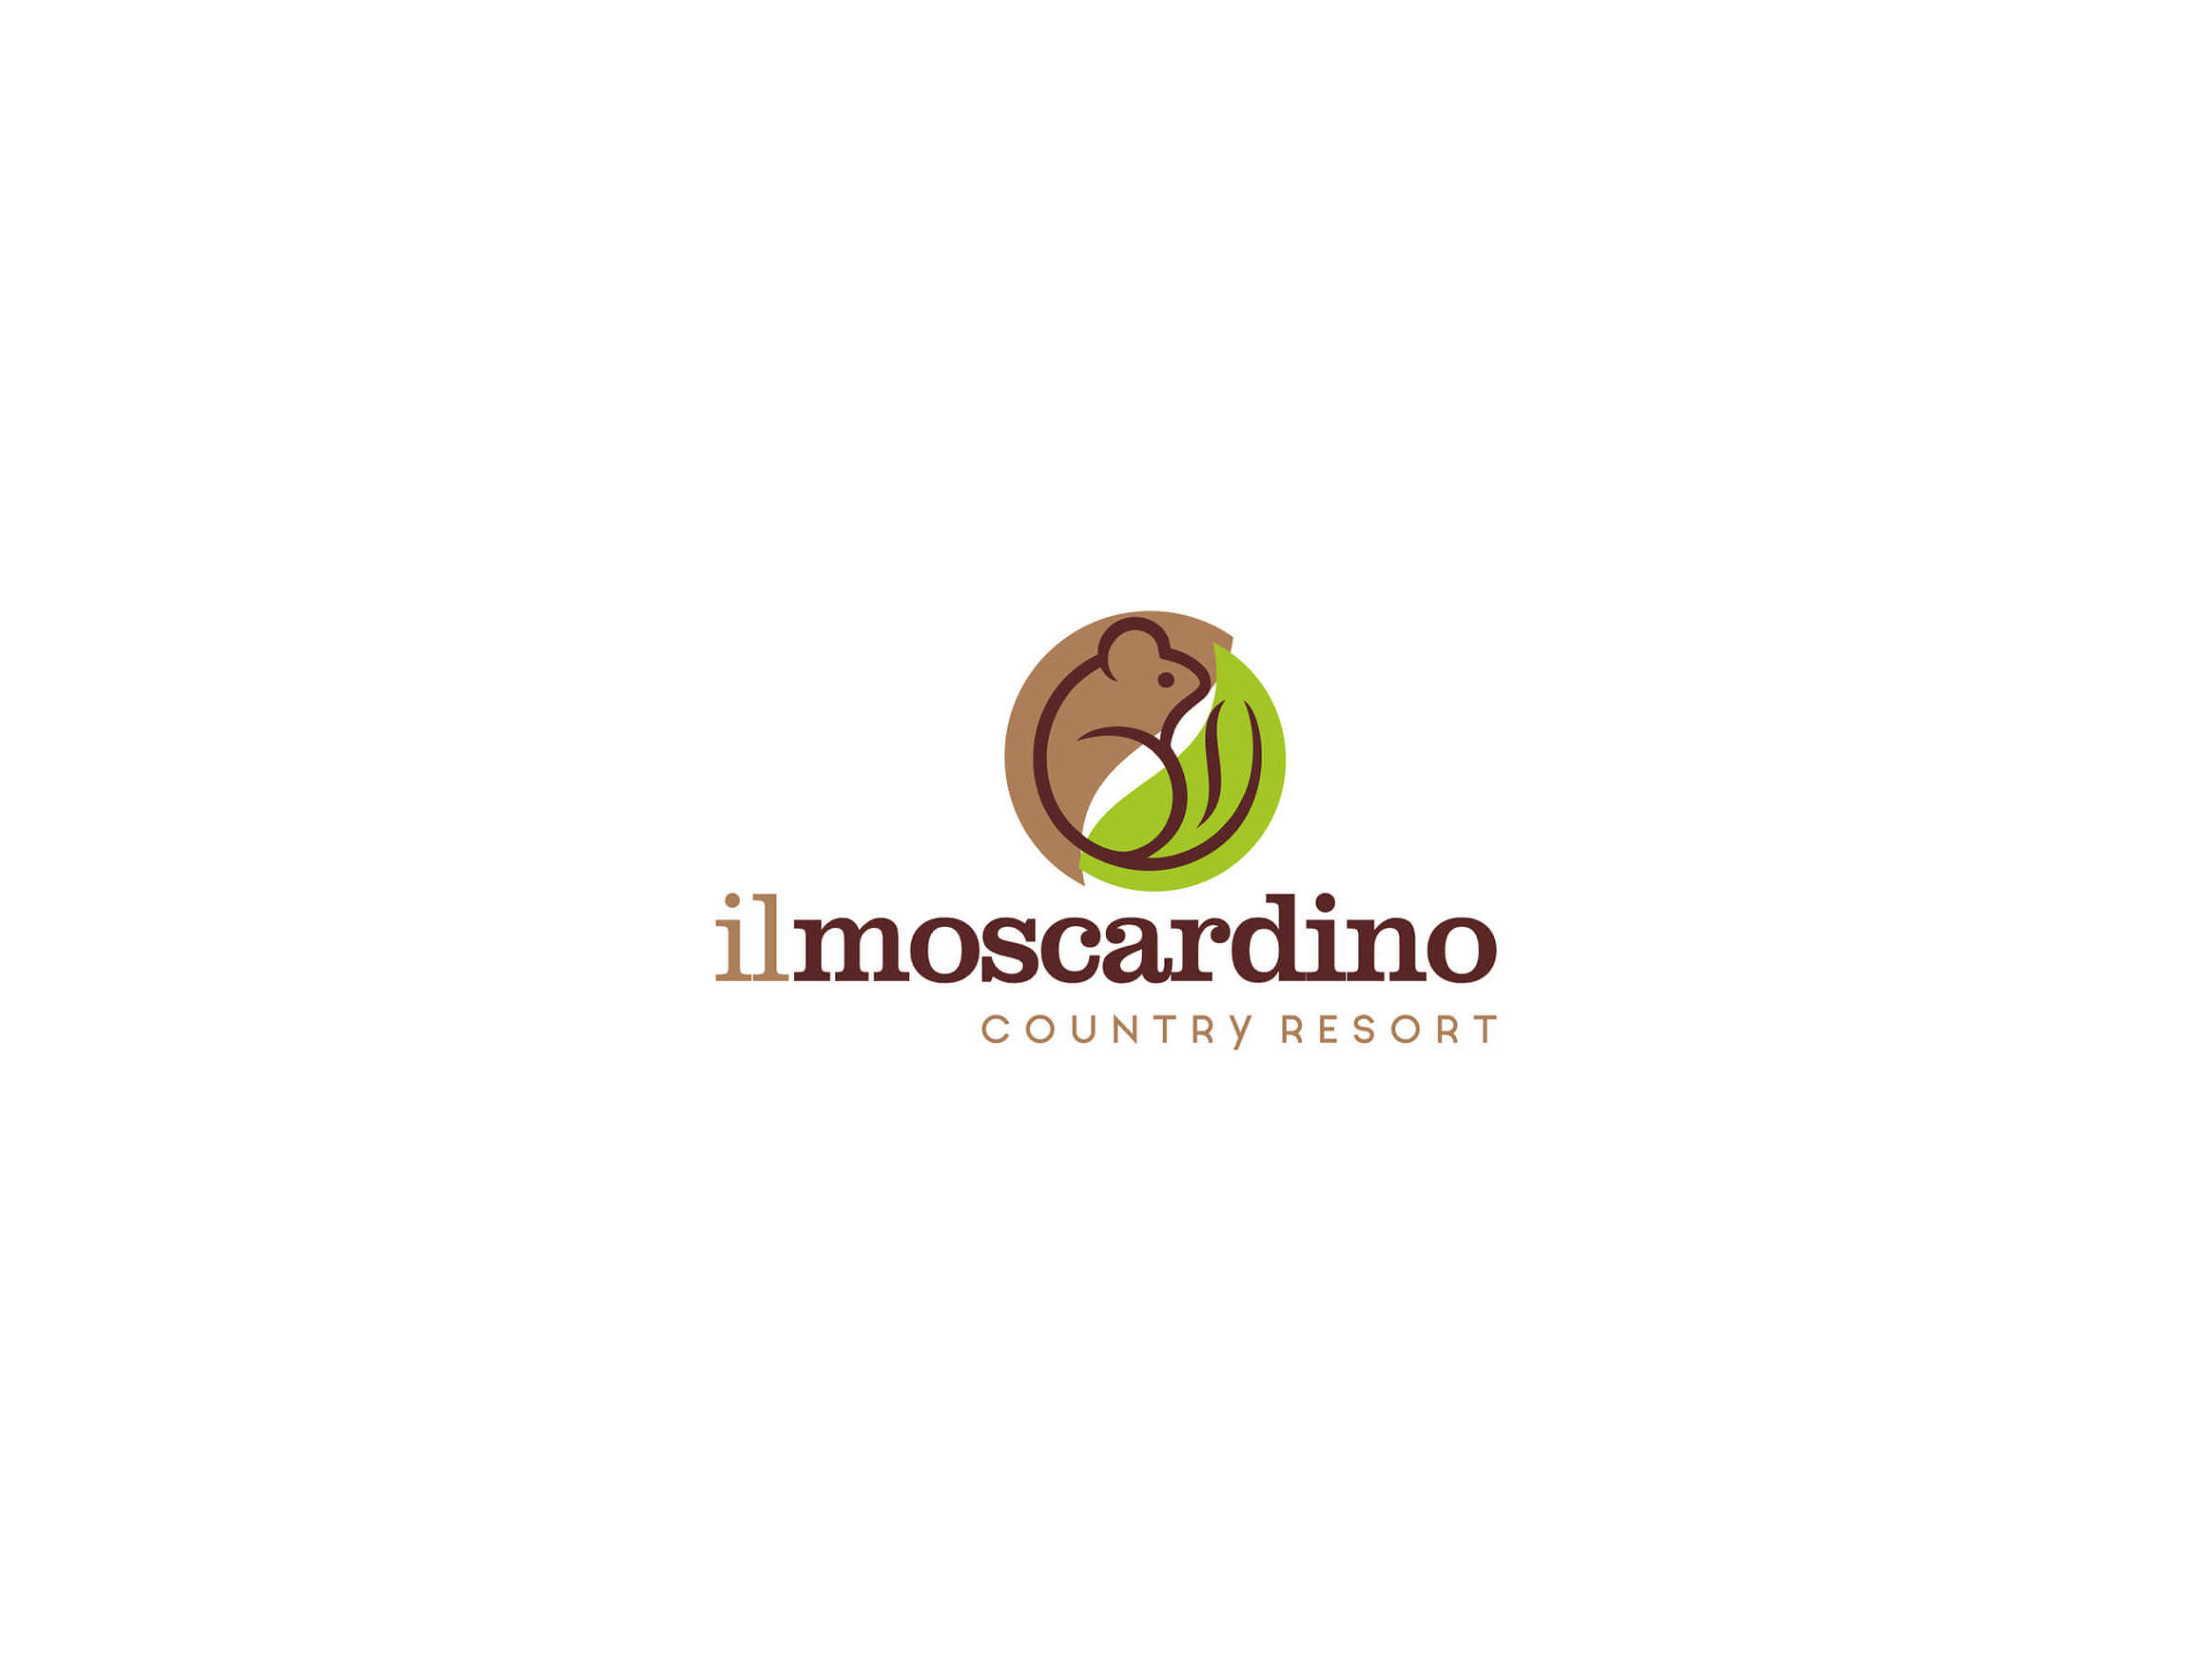 Il Moscardino - Country Resort by Francioso Comunicazione - 11